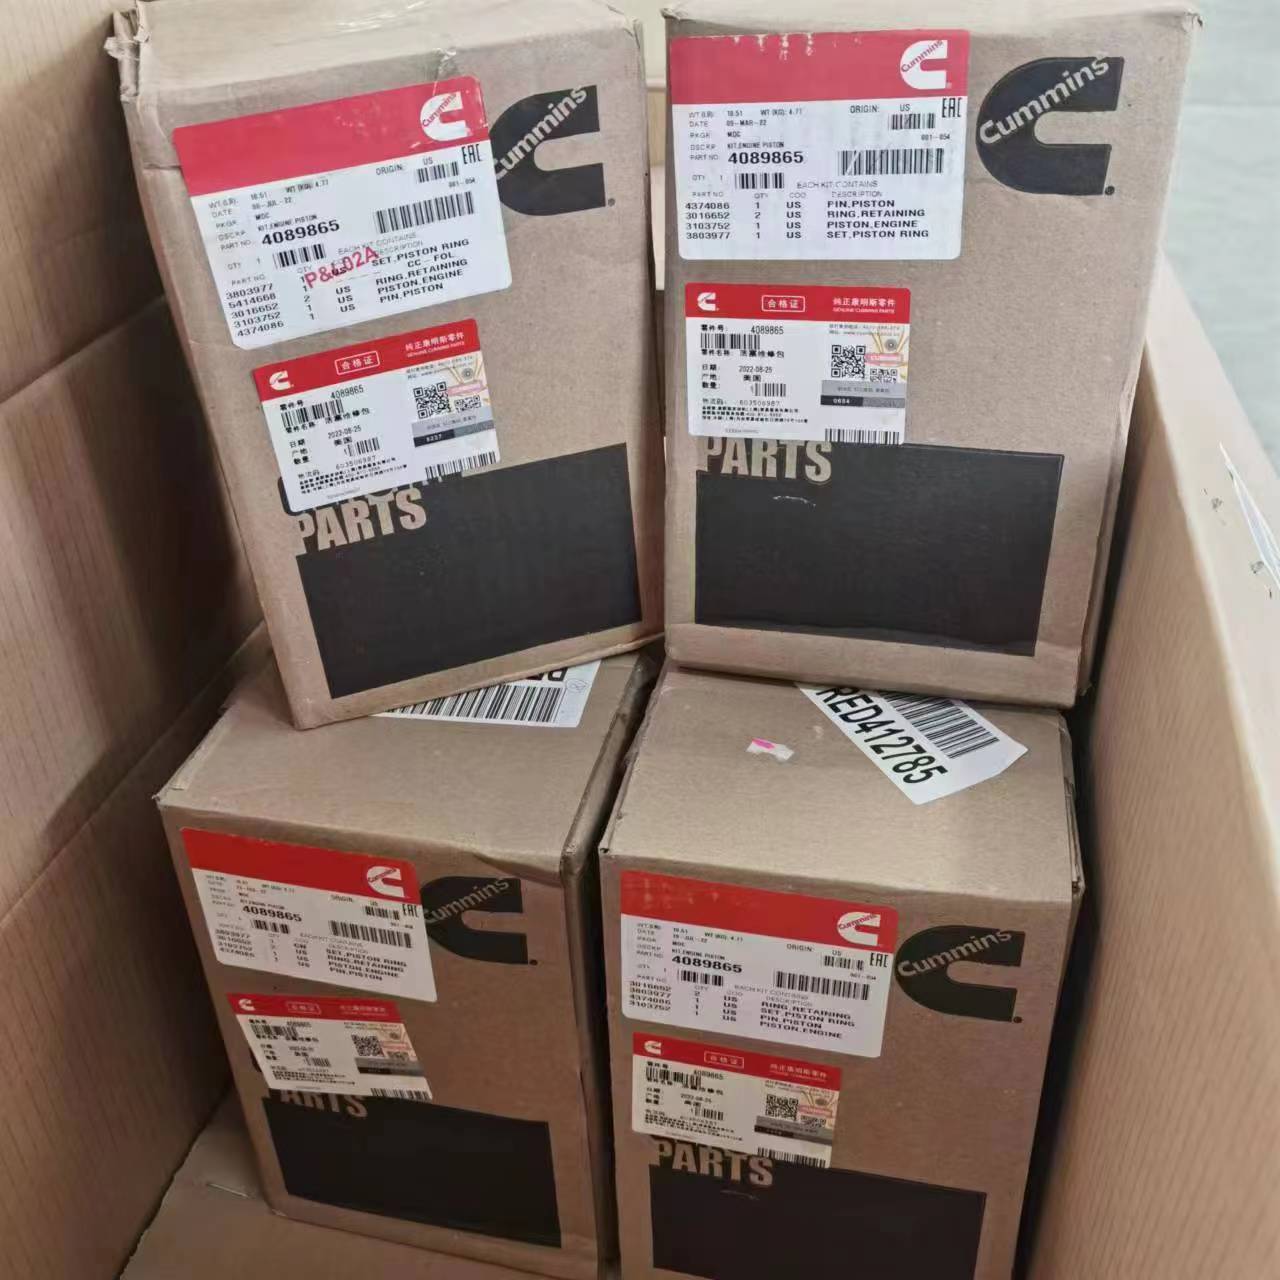 Wholesale 4089865 3103752 Genuine Quality Piston Kit for Cummins M11 ISM11 QSM11 Engine Parts